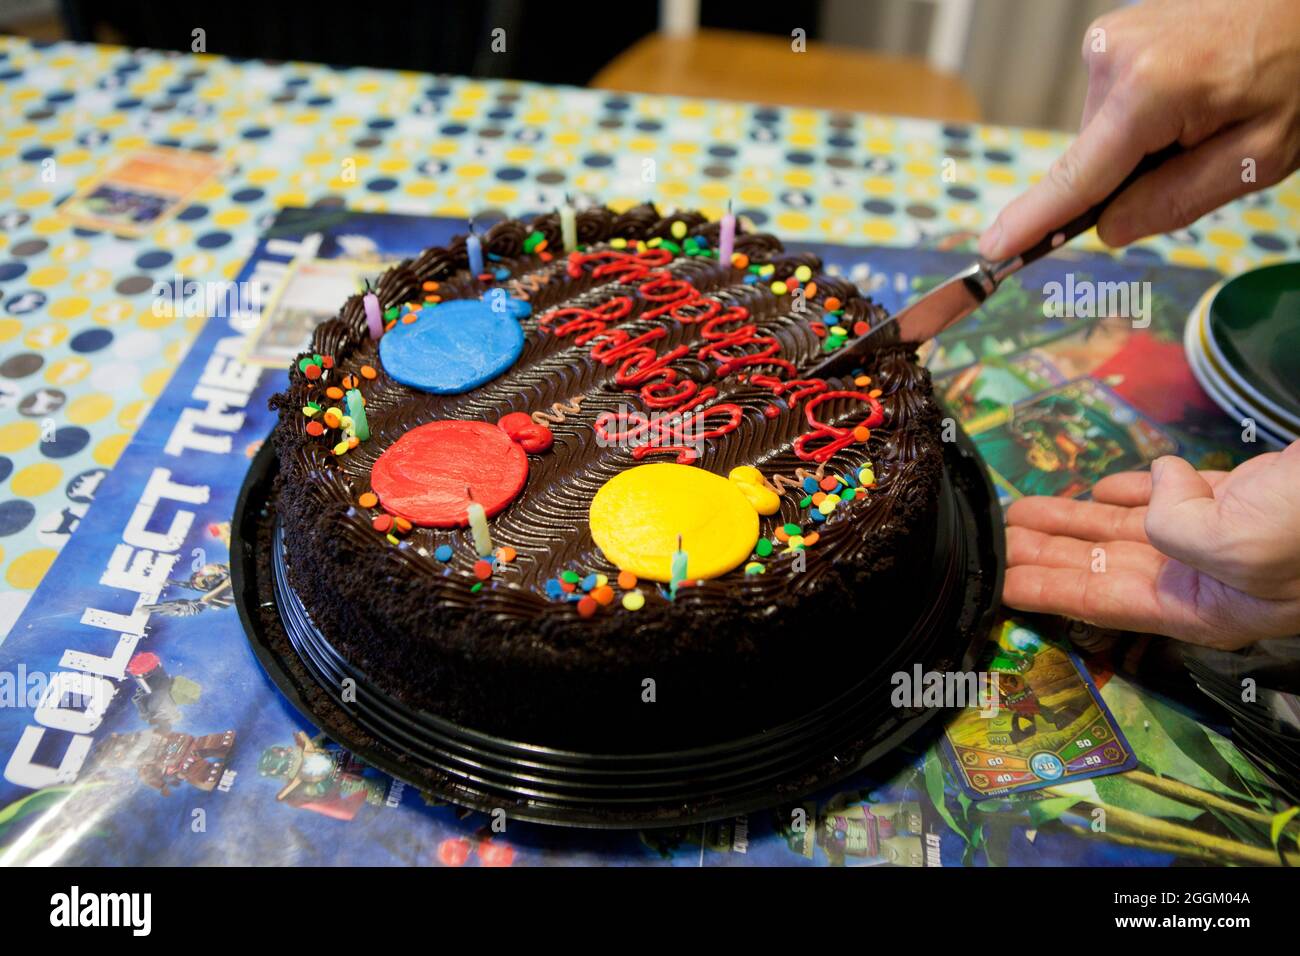 Hombre cortando pastel de cumpleaños de chocolate, de cerca - EE.UU Foto de stock